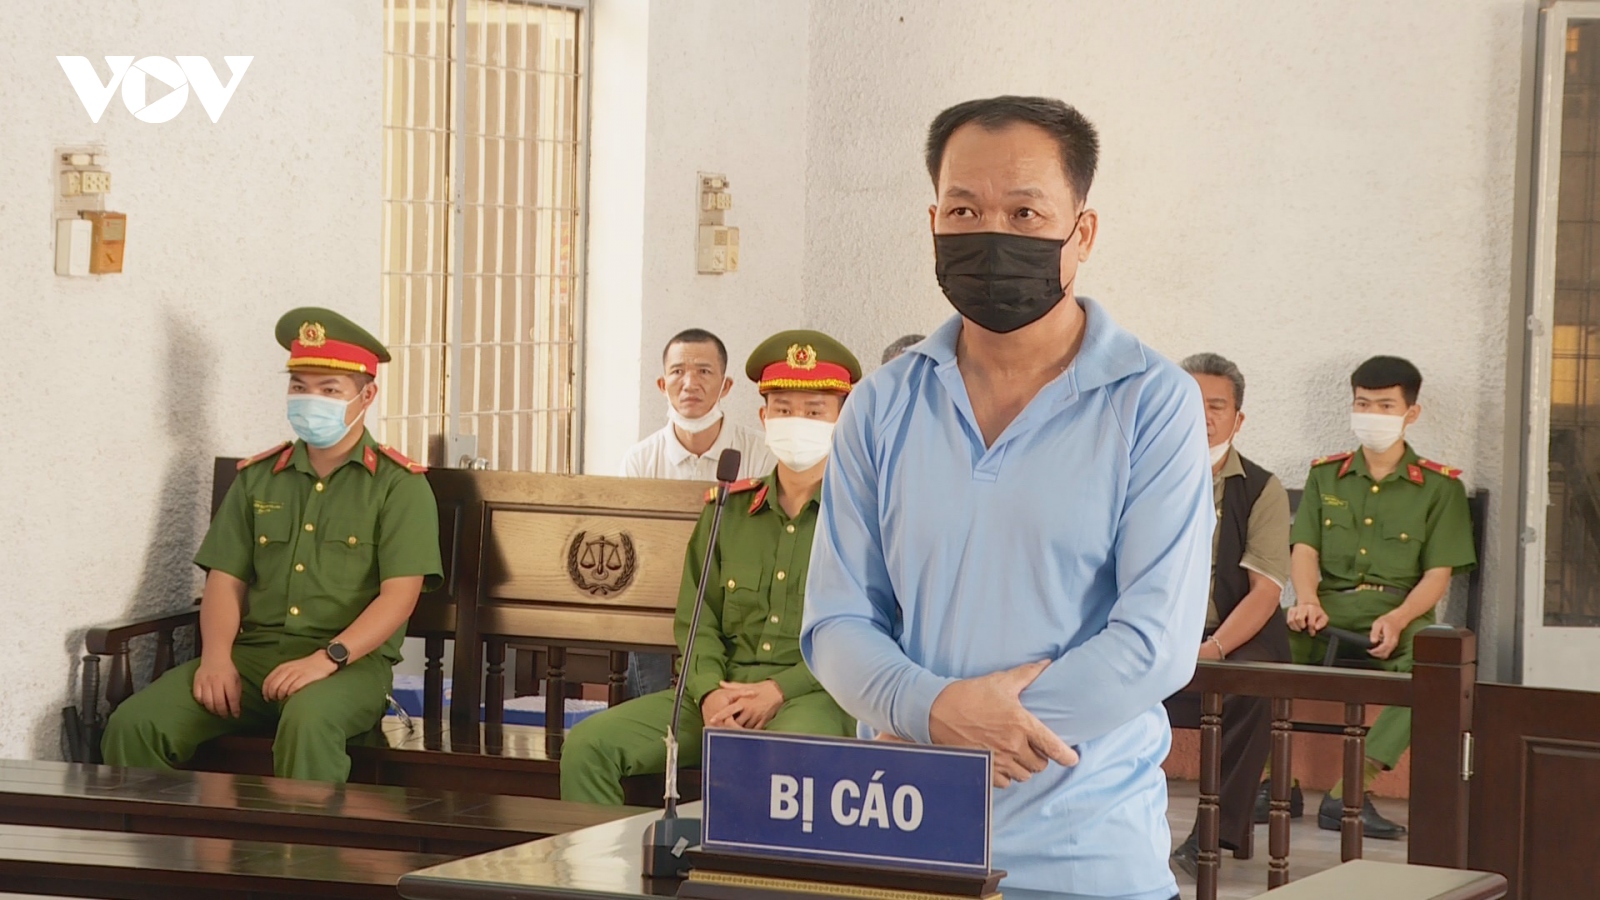 Chém người vì tranh chấp mua gỗ keo, hung thủ bị tuyên hơn 12 năm tù